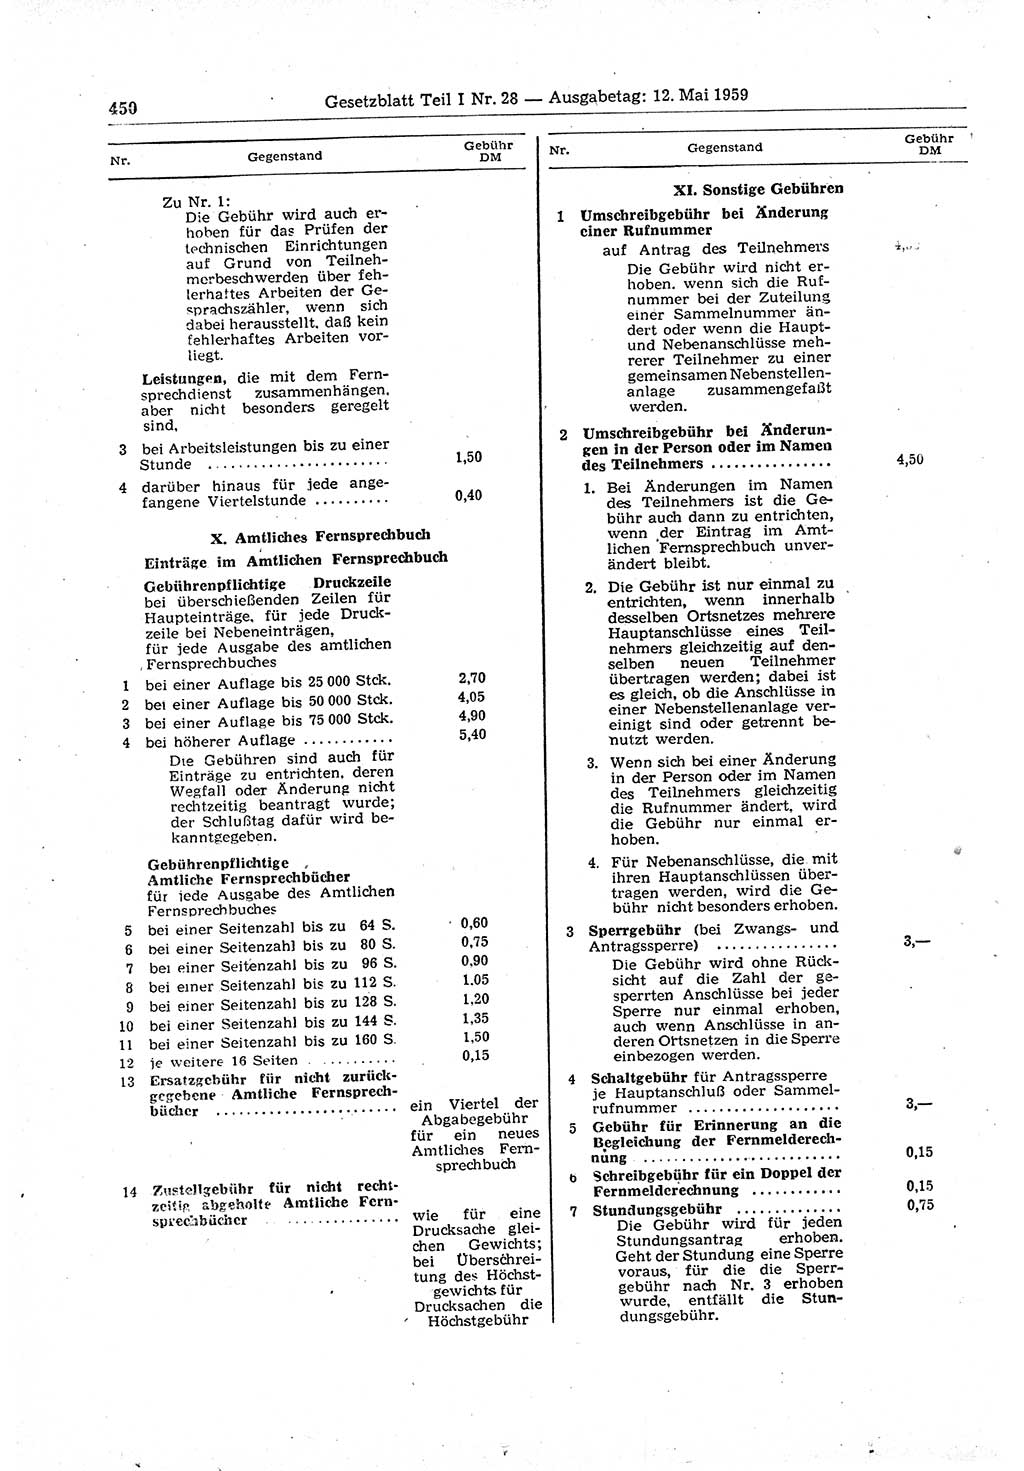 Gesetzblatt (GBl.) der Deutschen Demokratischen Republik (DDR) Teil Ⅰ 1959, Seite 450 (GBl. DDR Ⅰ 1959, S. 450)